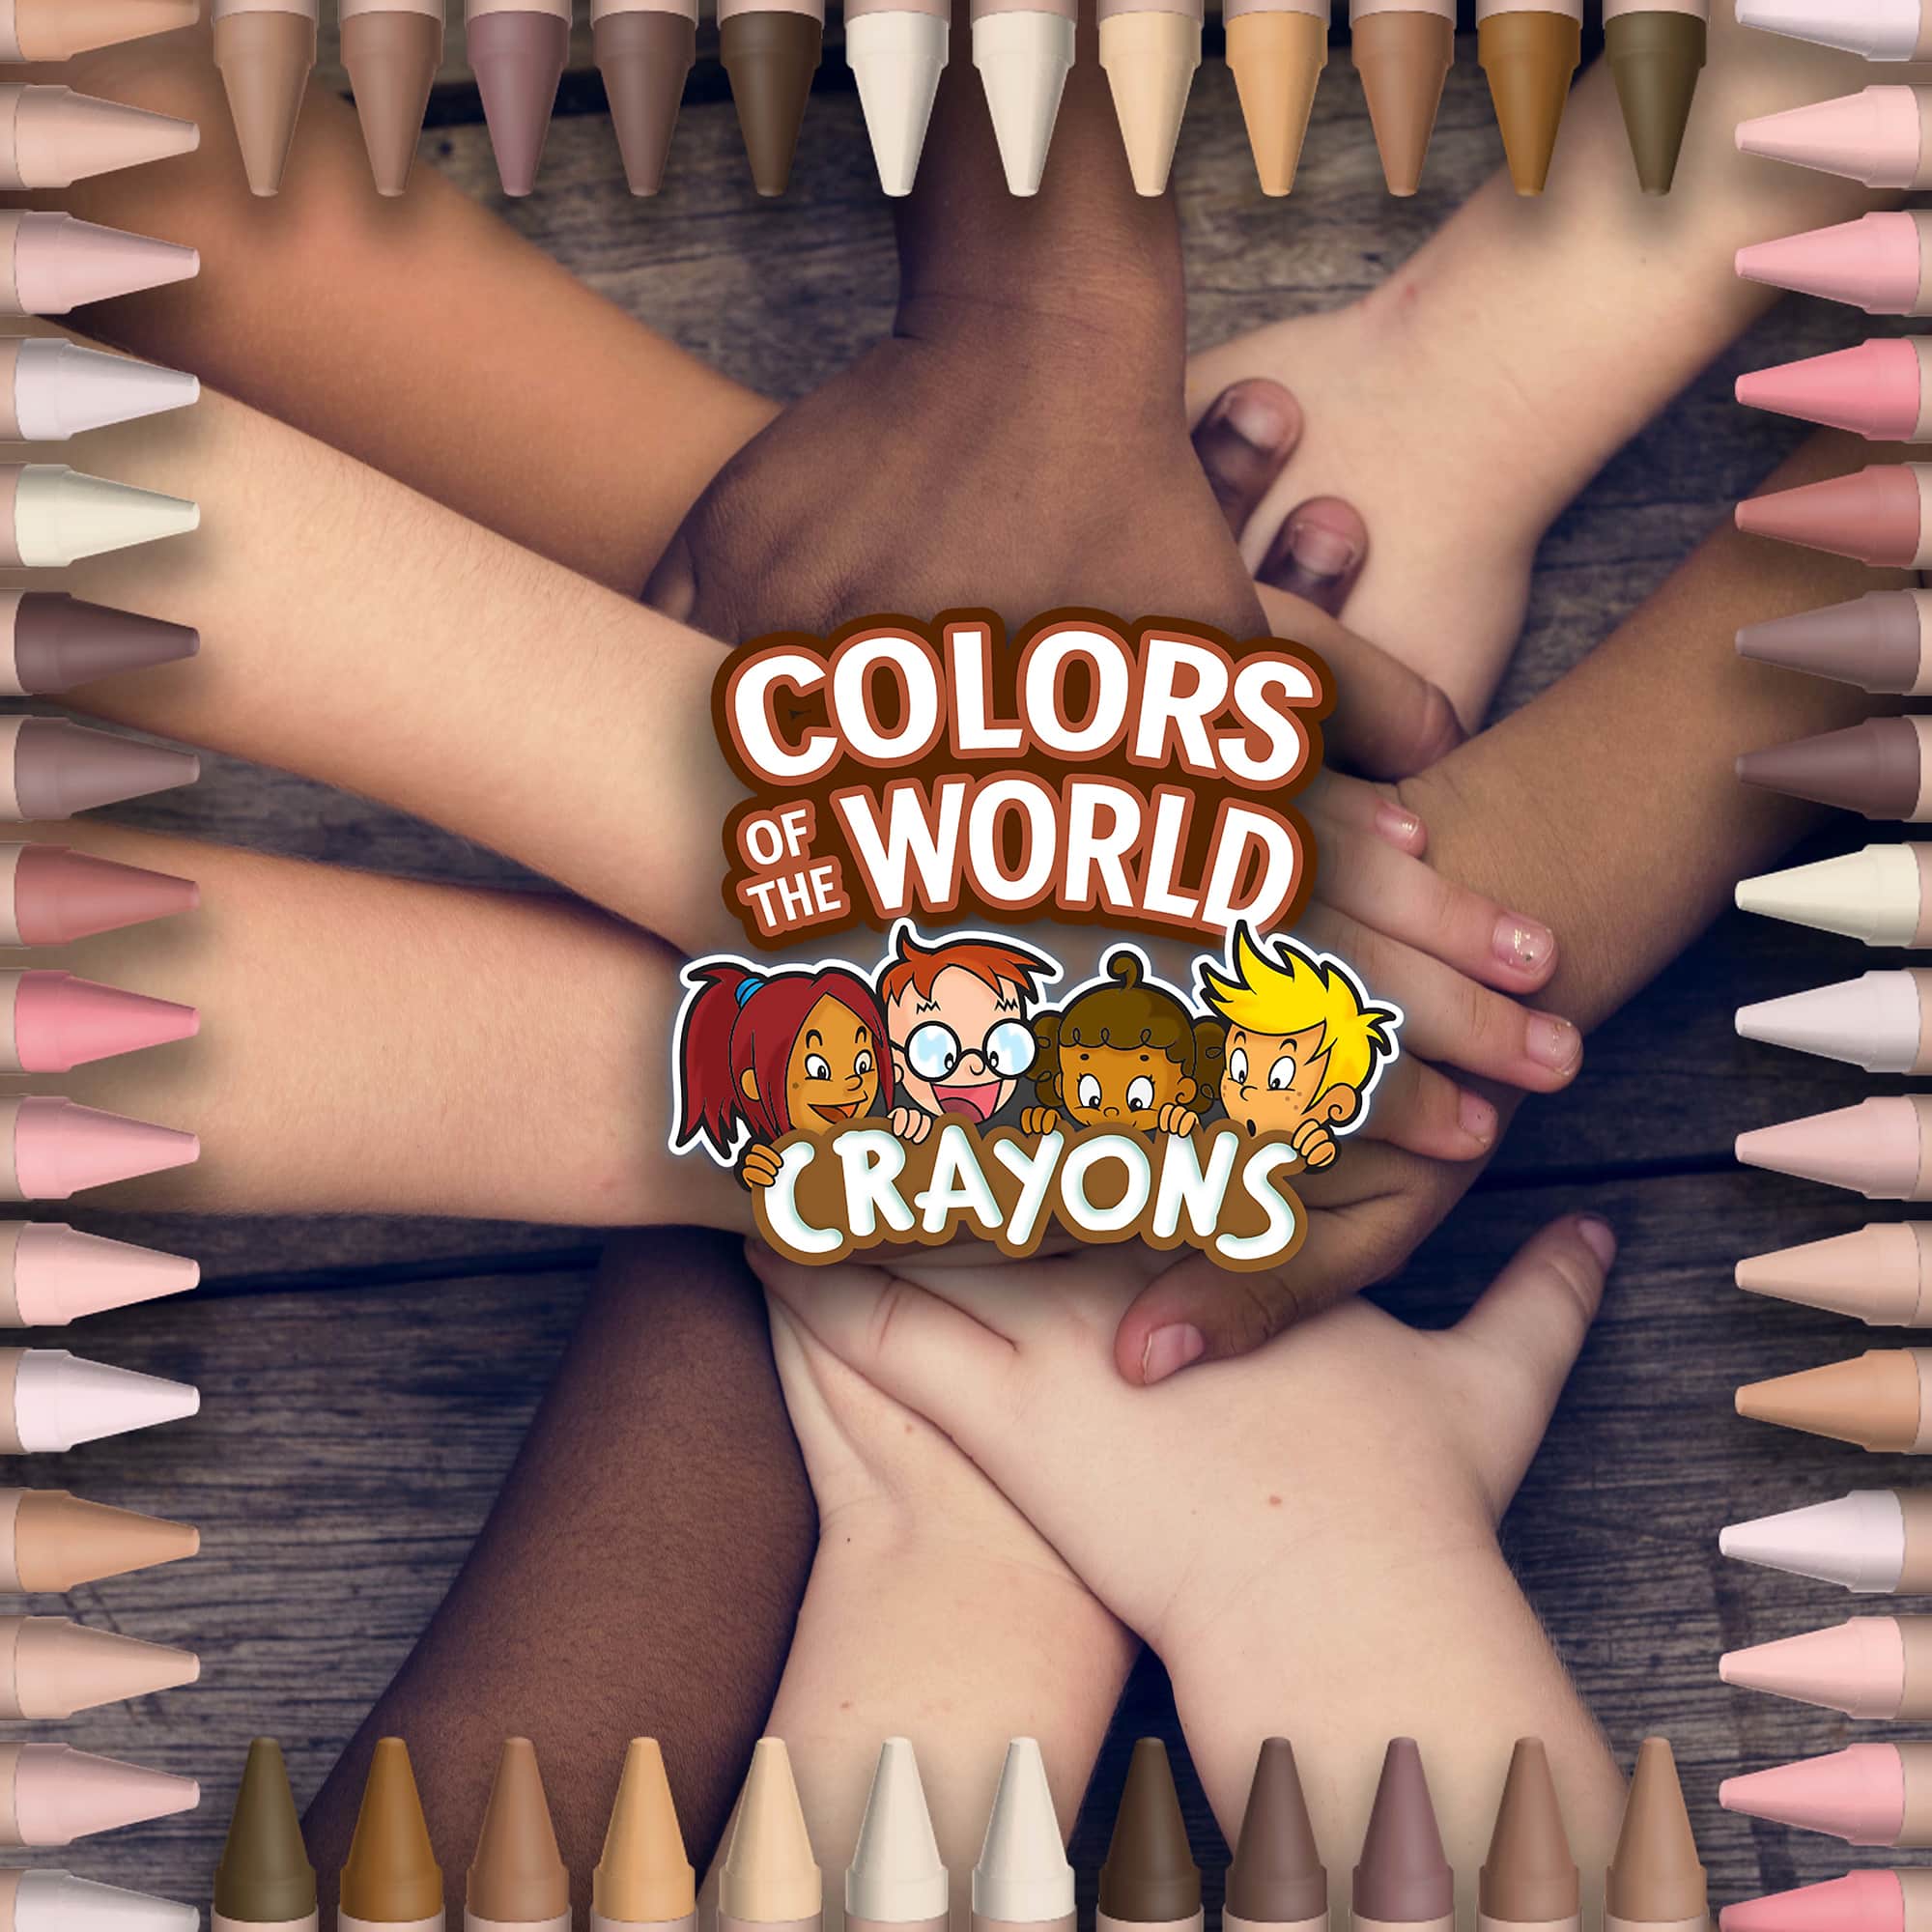 Crayola lance de nouveaux crayons couleur « peau » et c'est une excellente  nouvelle